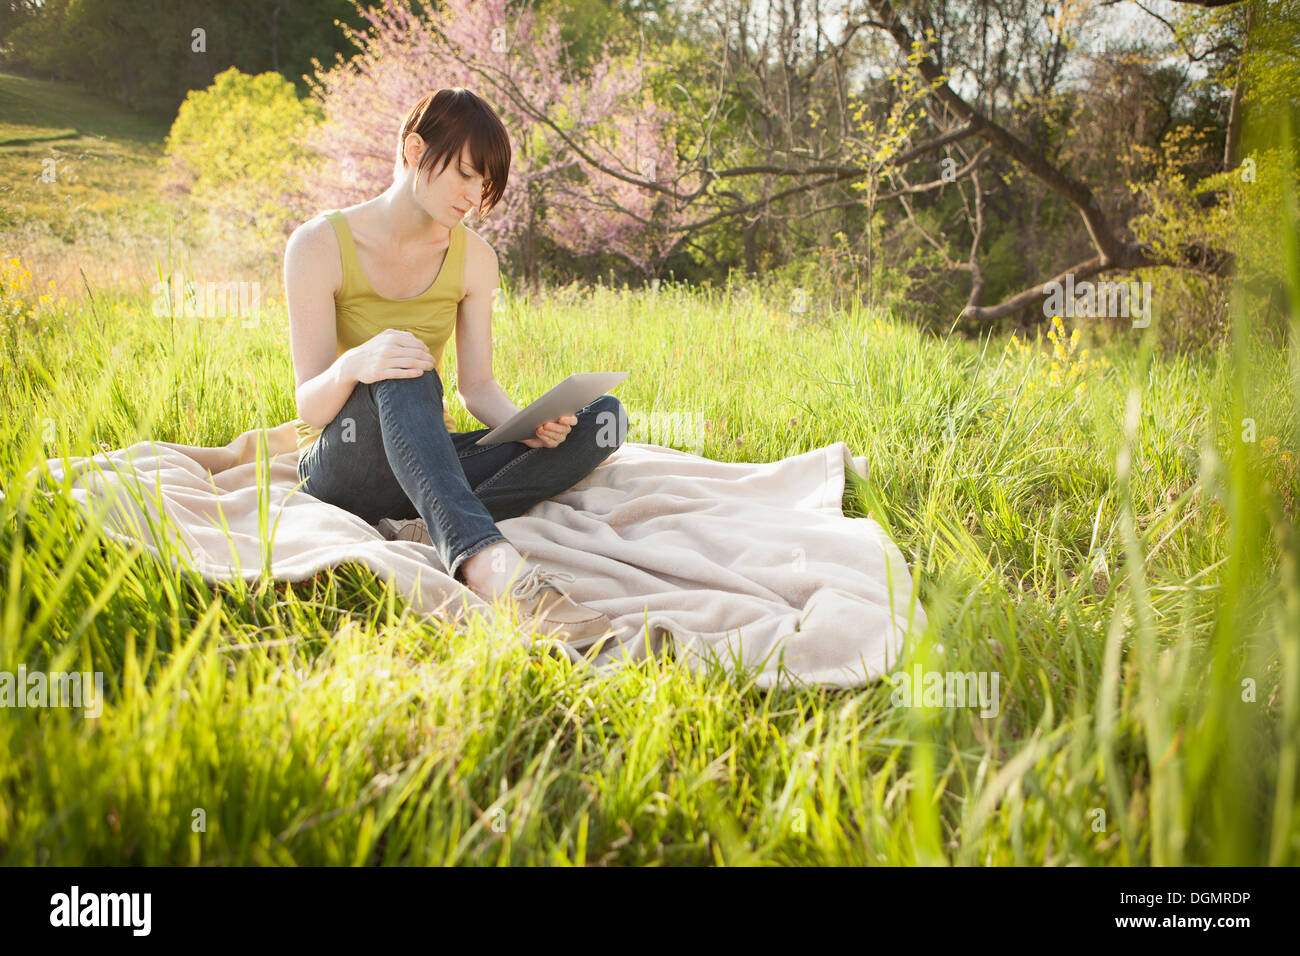 Una giovane donna seduta in un campo su una coperta, la lettura da una tavoletta digitale. Foto Stock